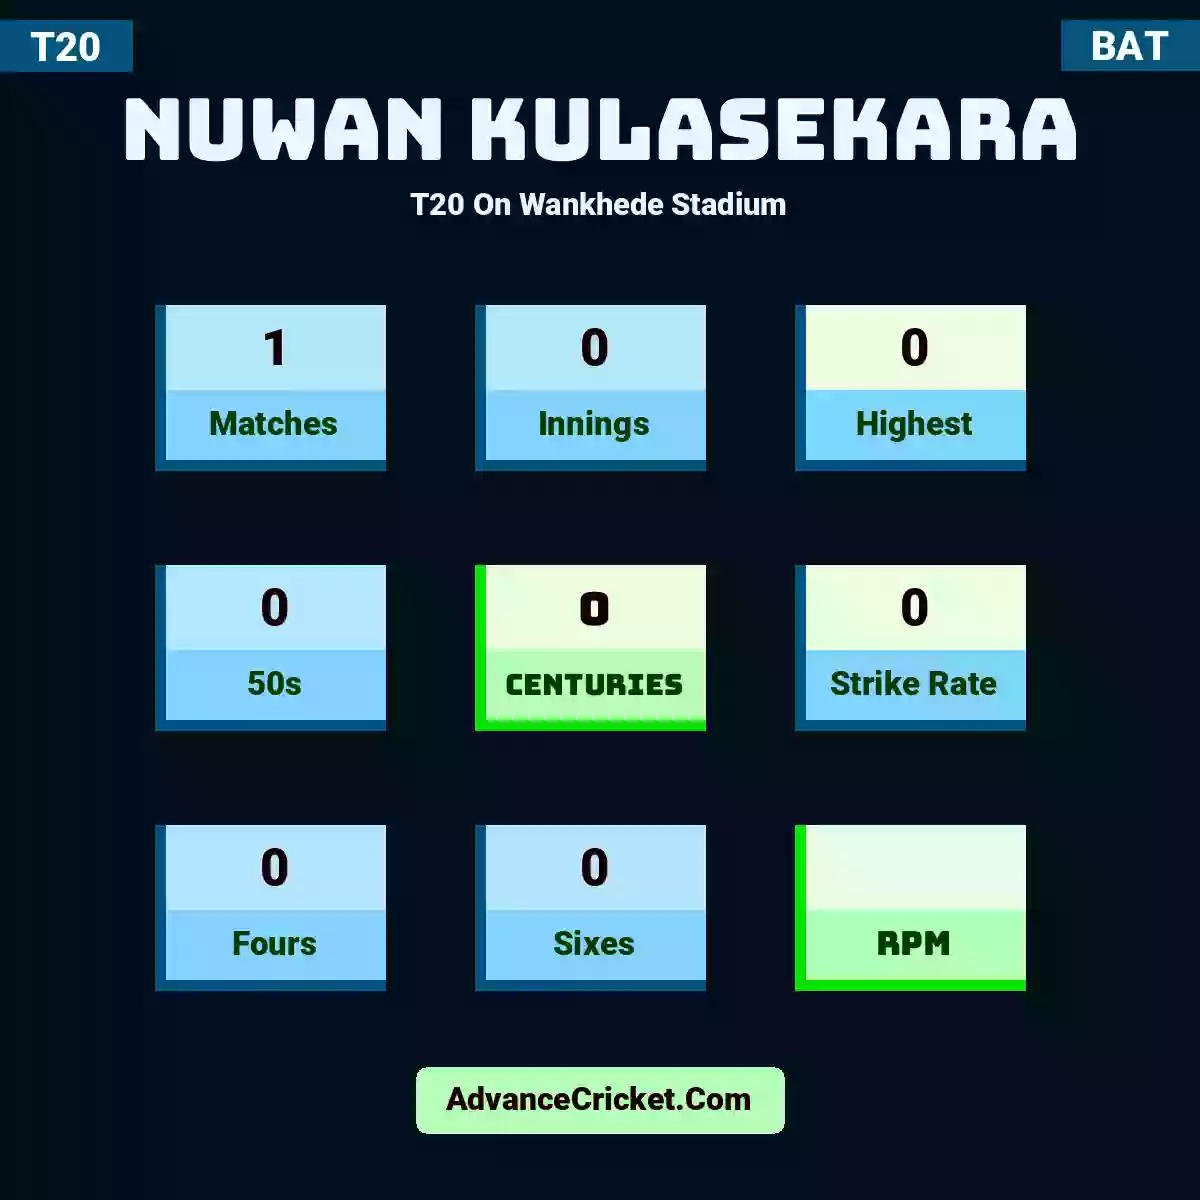 Nuwan Kulasekara T20  On Wankhede Stadium, Nuwan Kulasekara played 1 matches, scored 0 runs as highest, 0 half-centuries, and 0 centuries, with a strike rate of 0. N.Kulasekara hit 0 fours and 0 sixes.